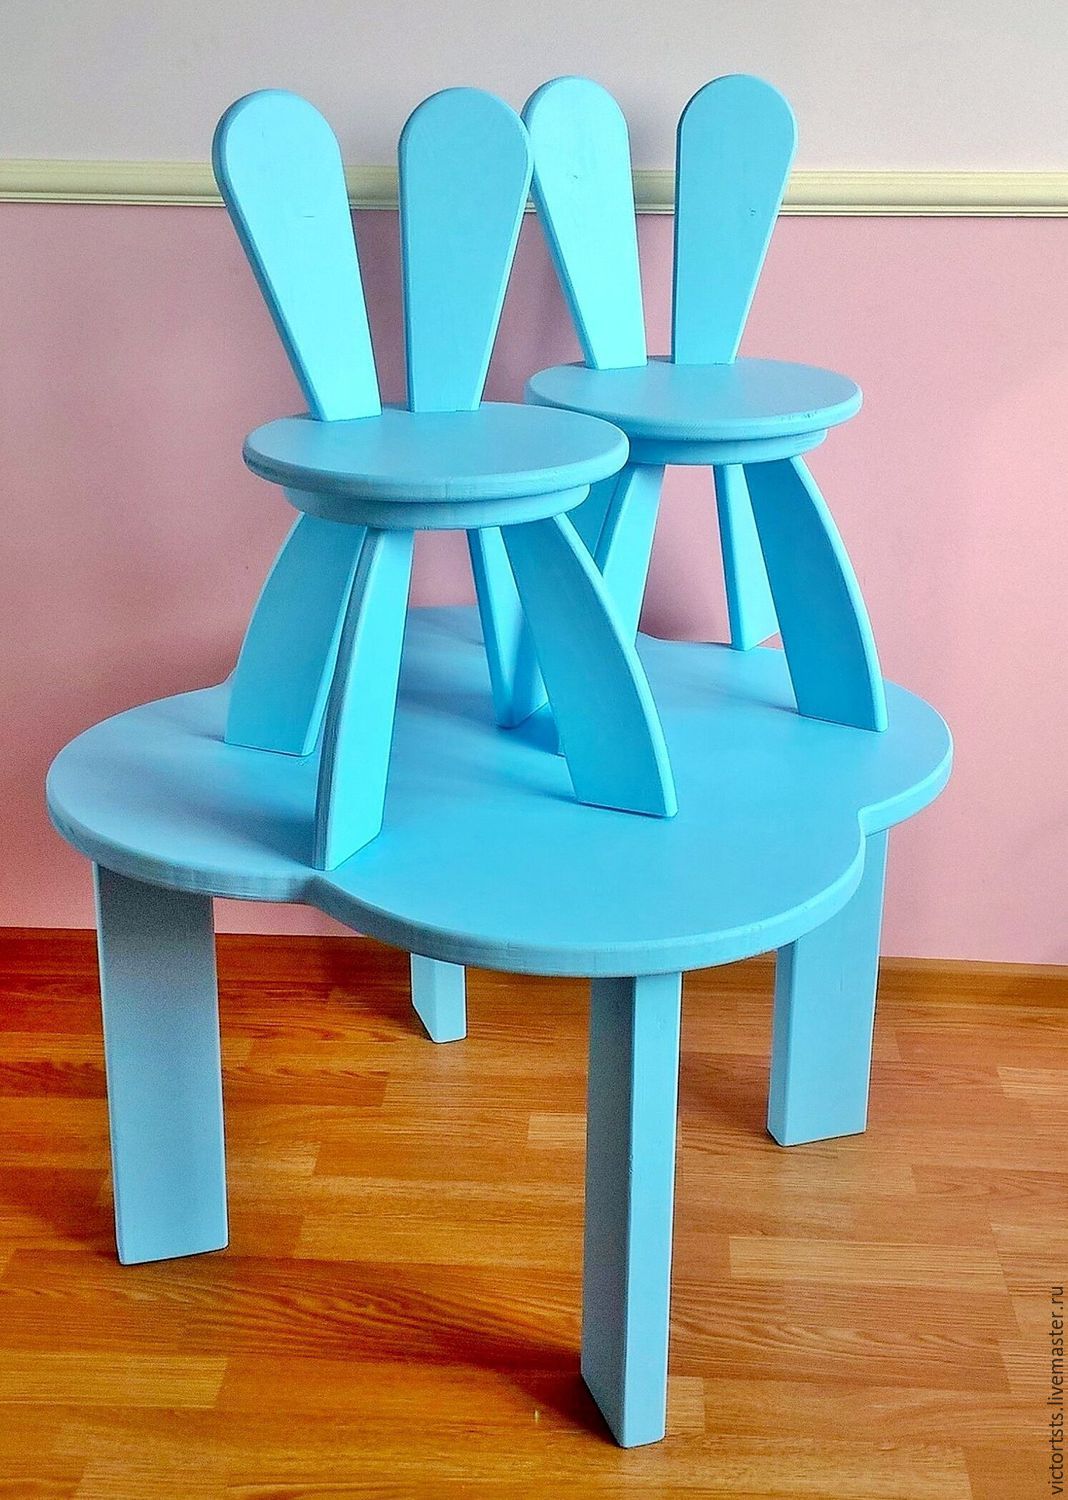 Детский мир детский стол стул